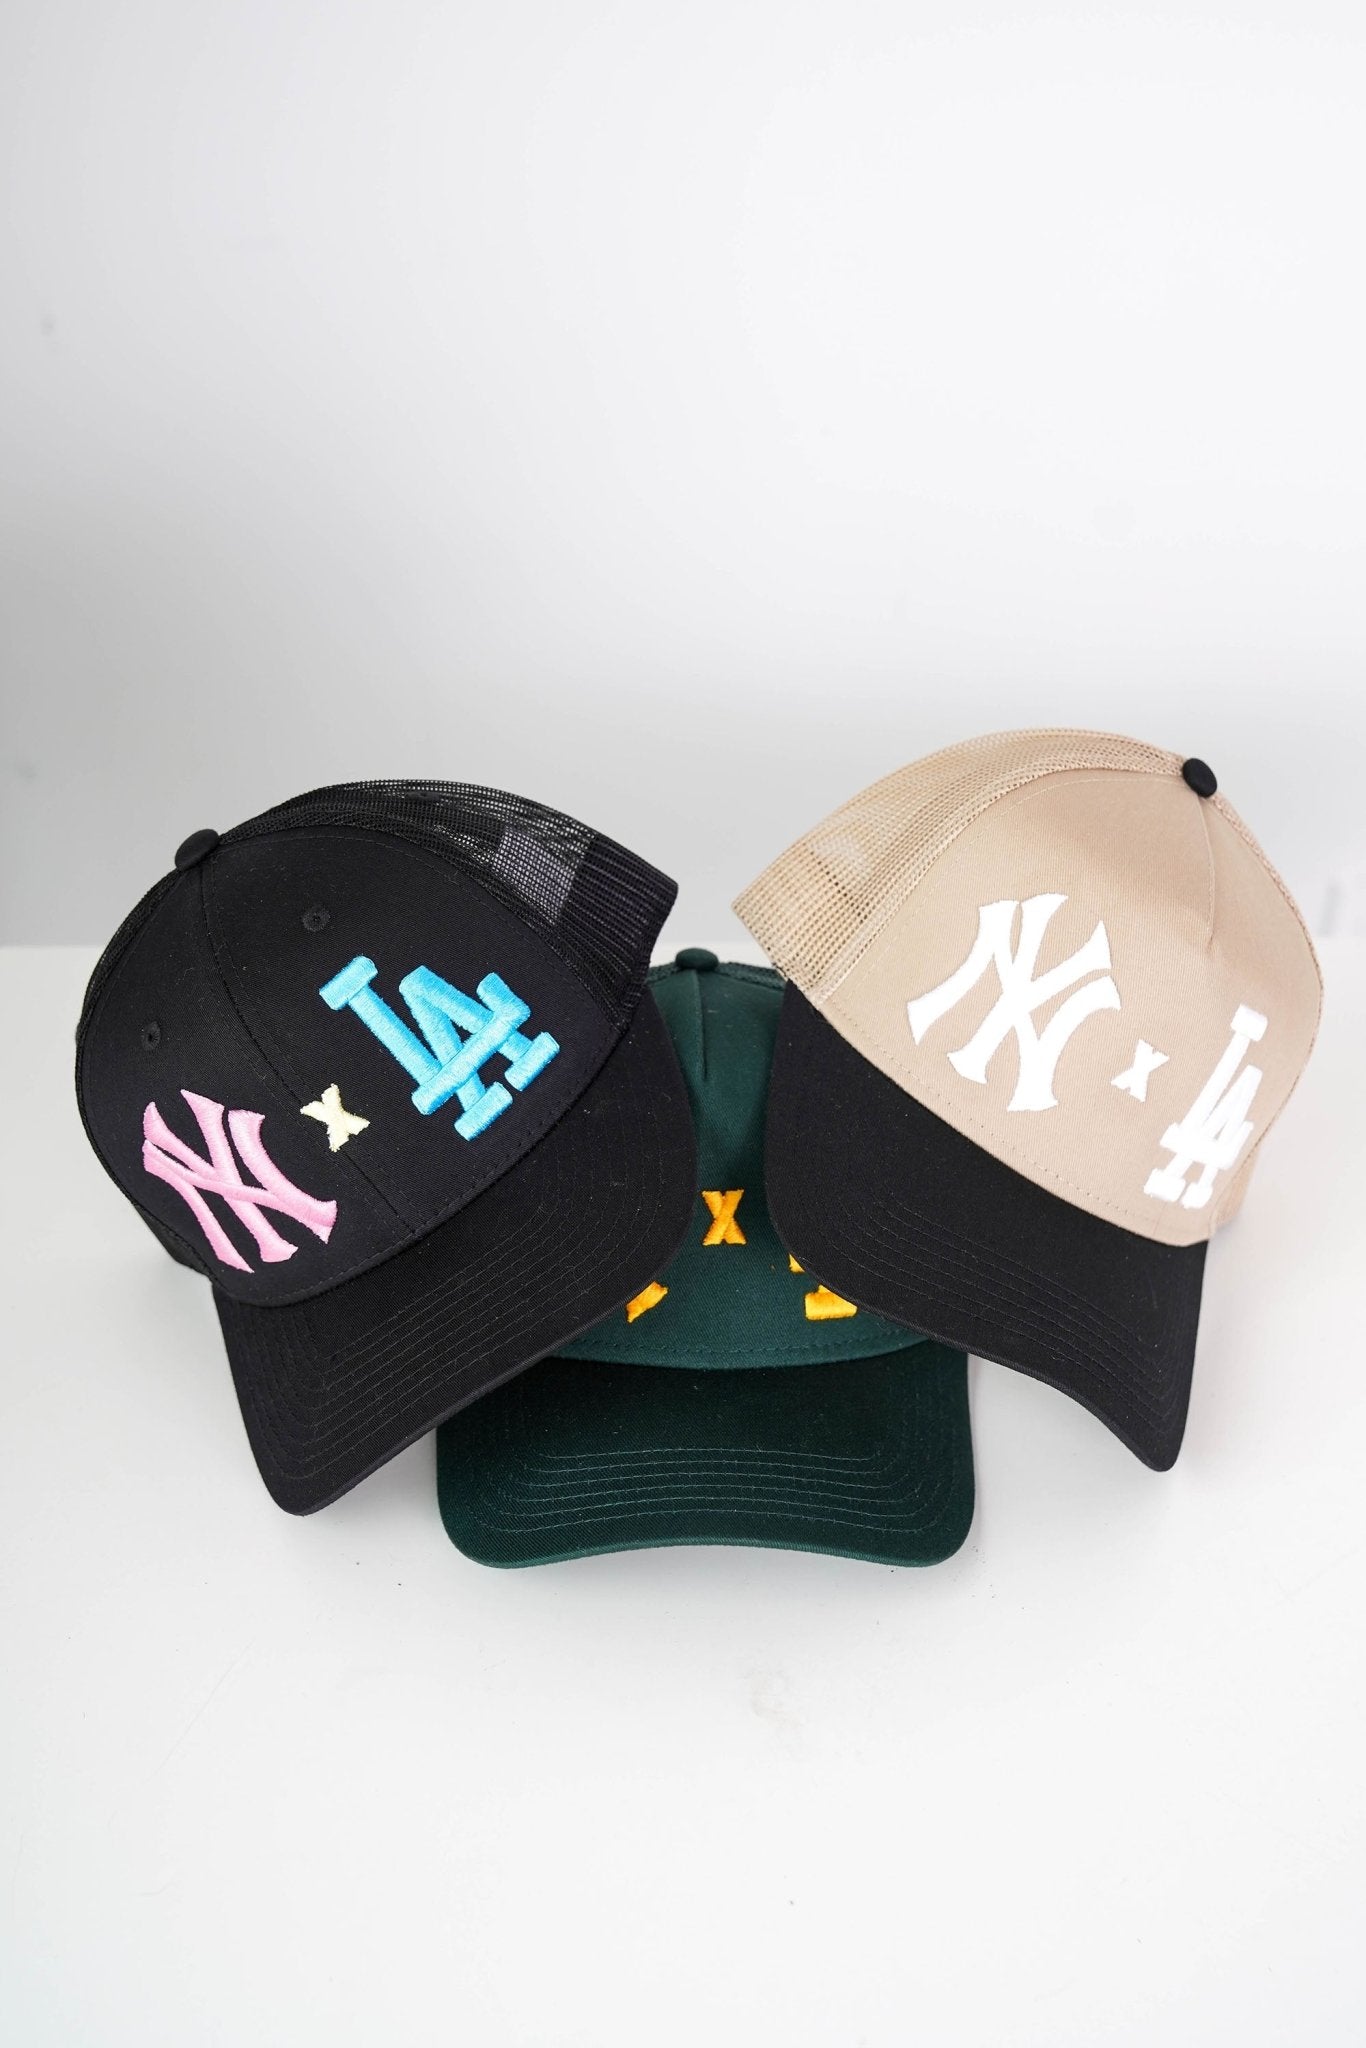 Green NY X LA, Men's hat, Trucker Cap